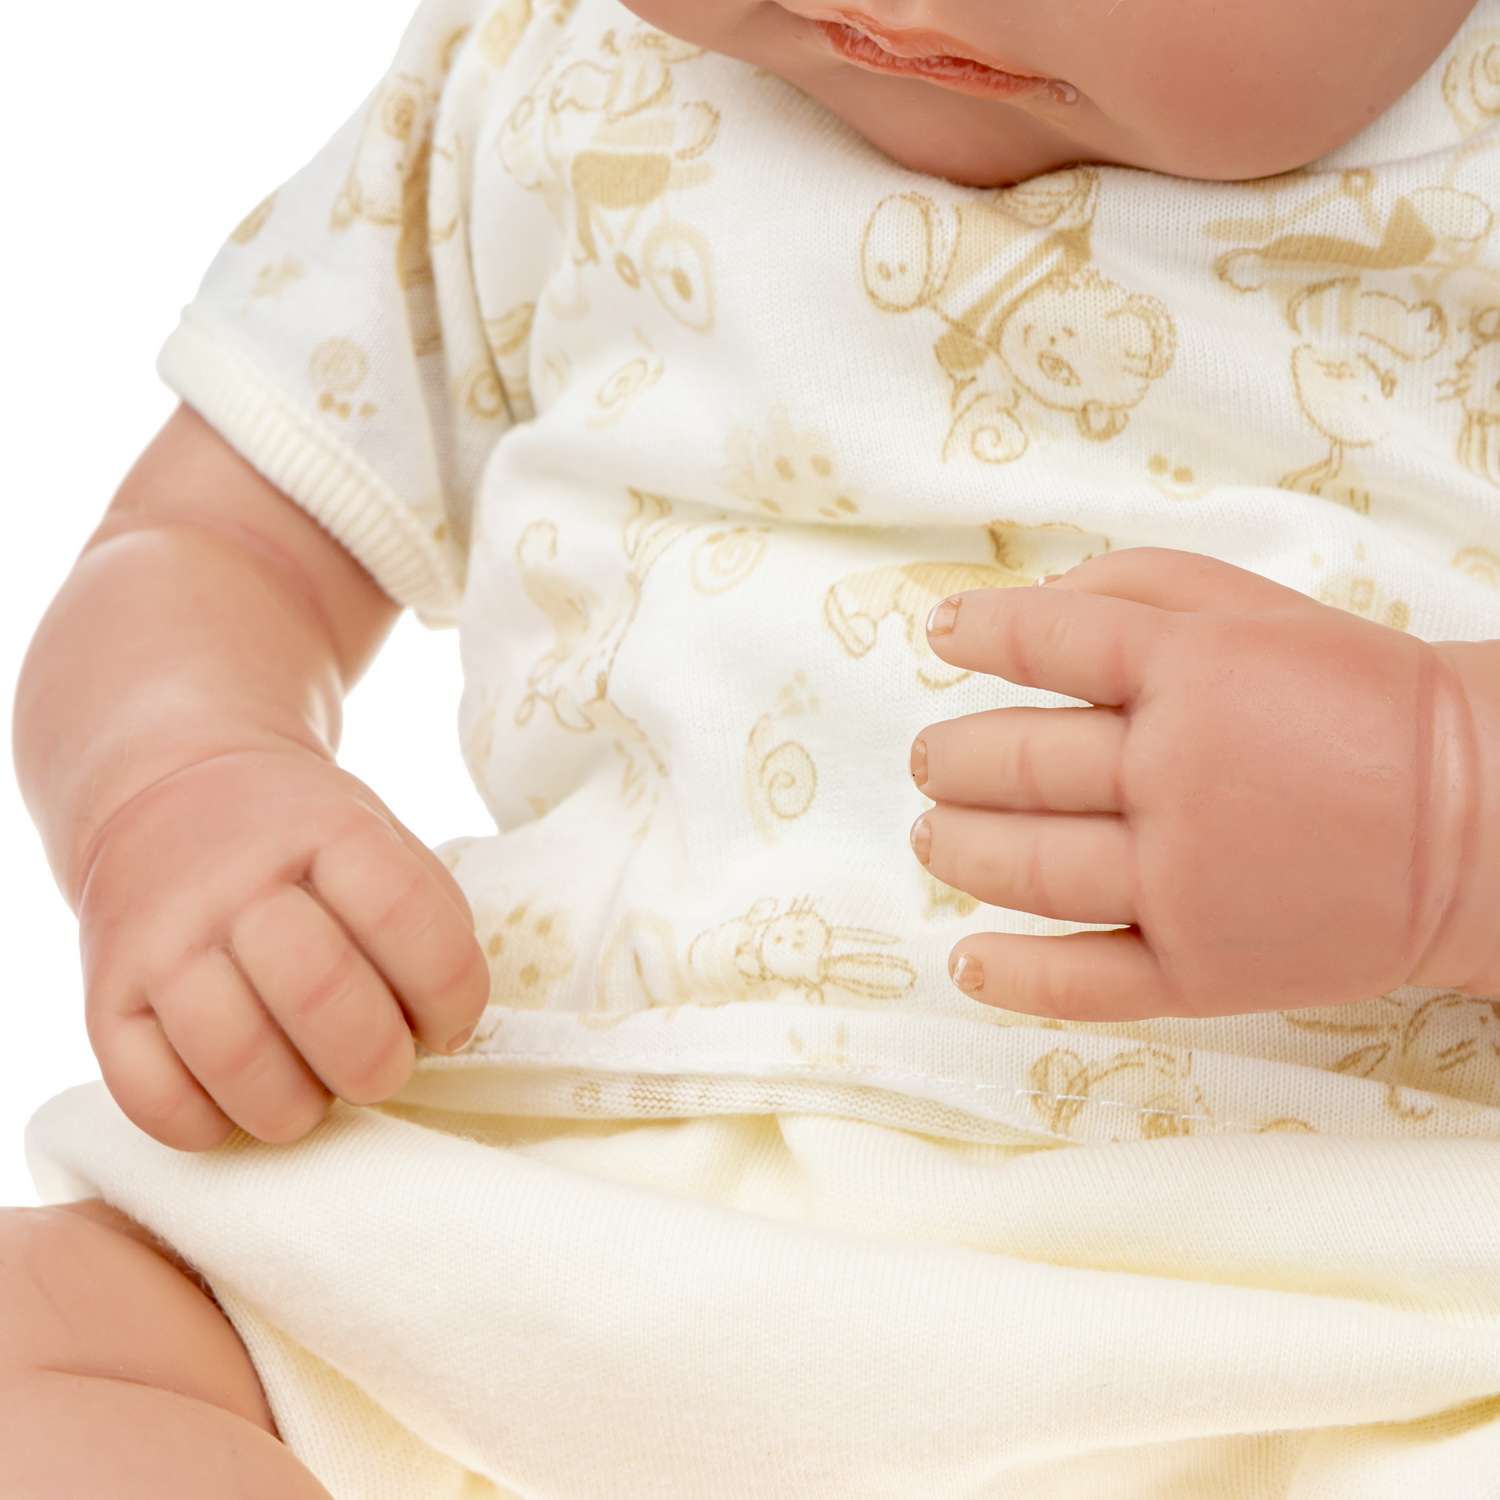 Кукла Arias ReBorns Pablo новорождённый пупс 45 см в одежде с соской одеялом подгузниками Т22108 - фото 12